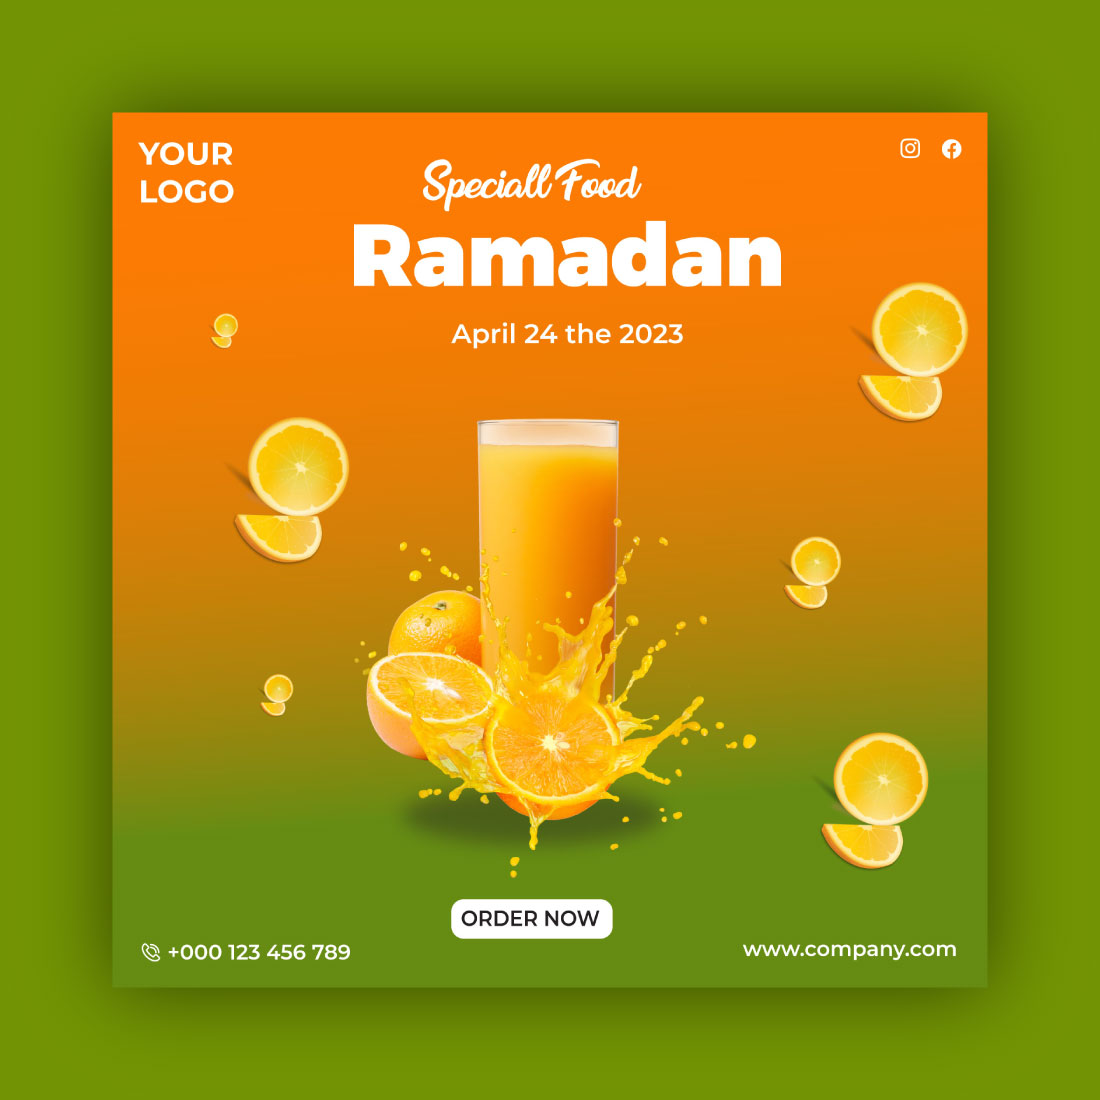 Ramadan Social Food Post Design Template preview image.